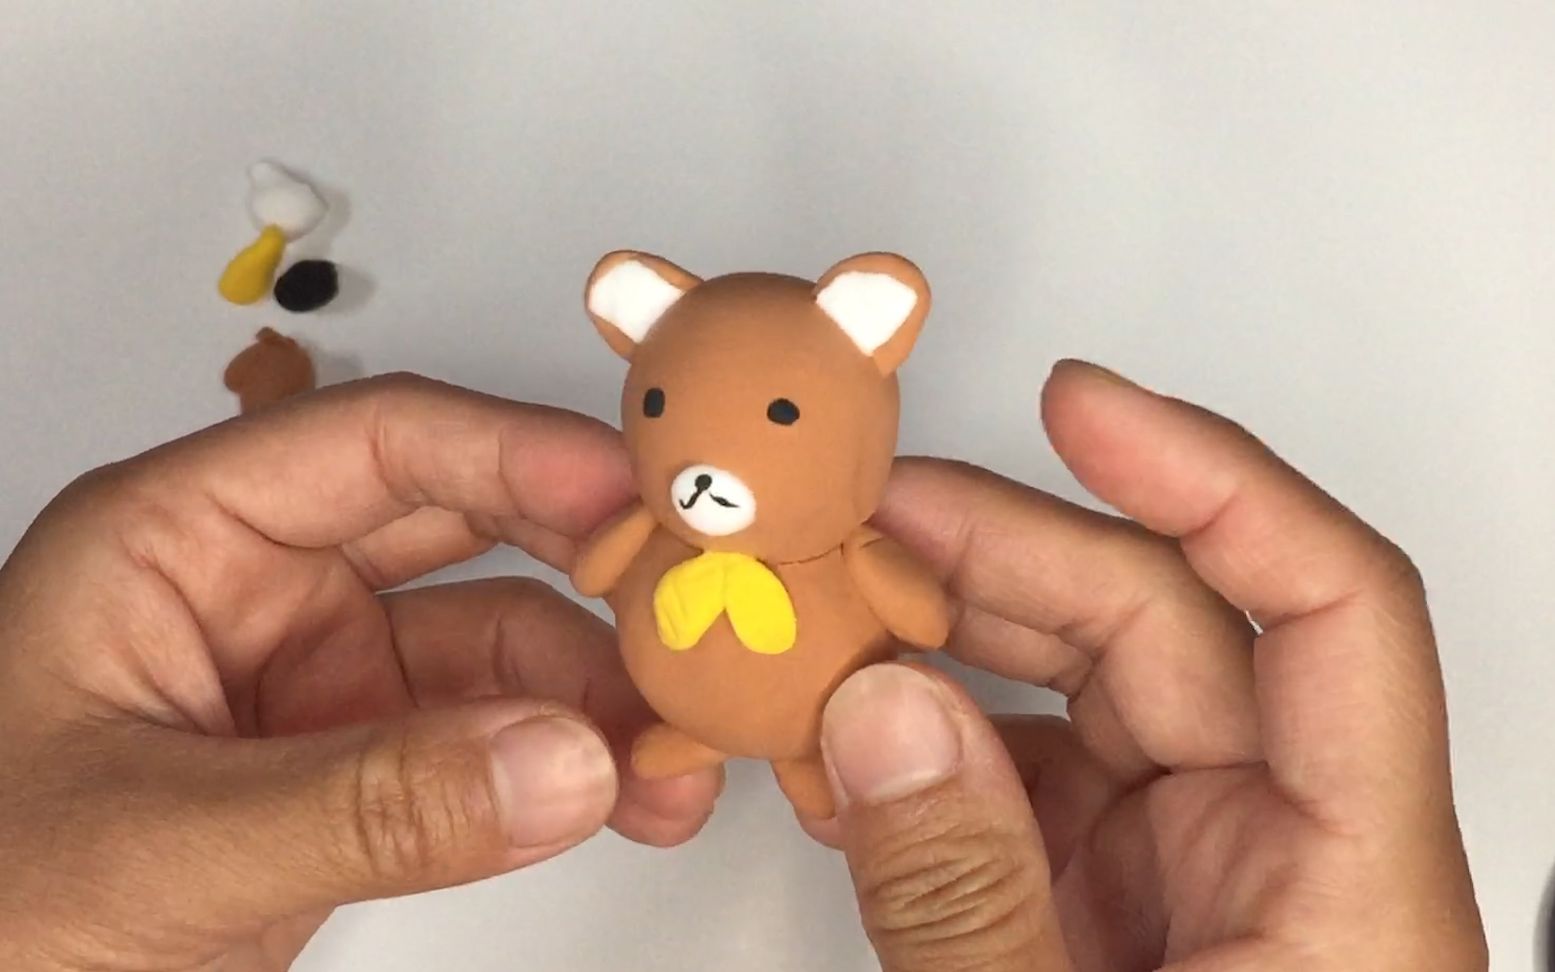 创意手工diy,用超轻黏土做一个可爱小熊,你能做的出来吗